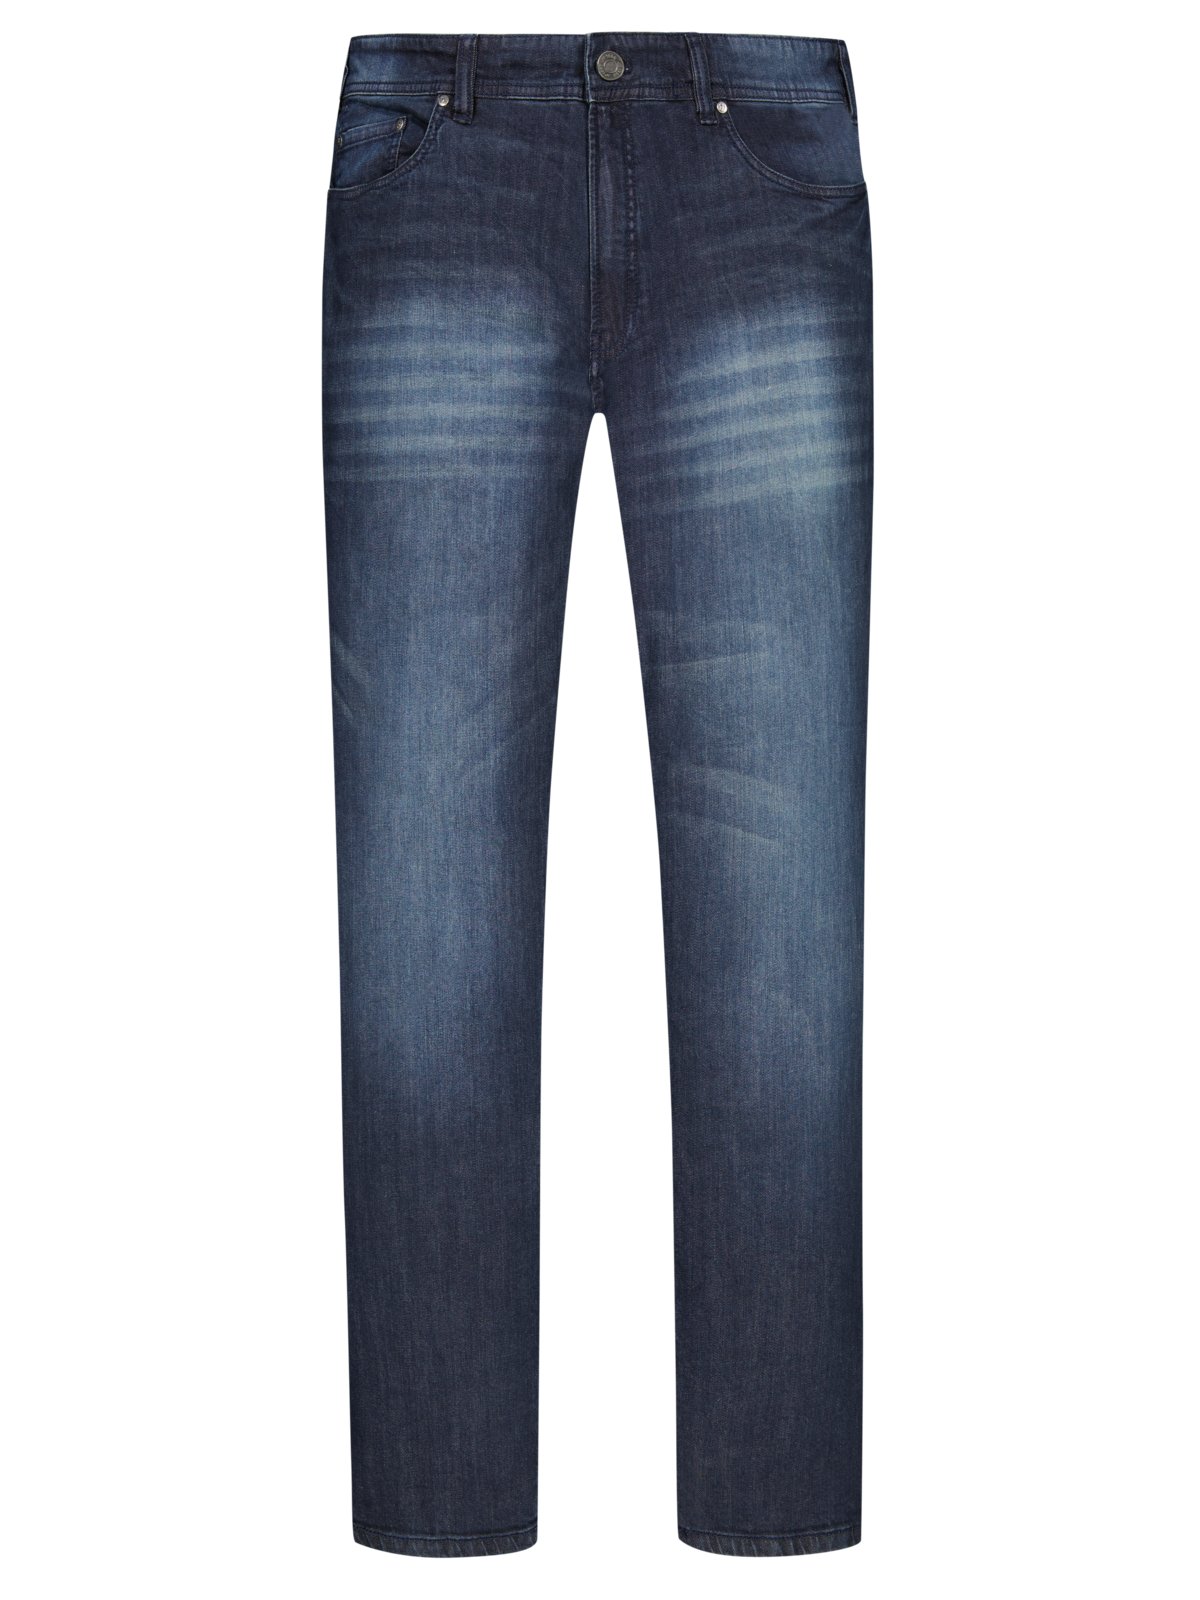 JP1880 5-Pocket Jeans im washed-look